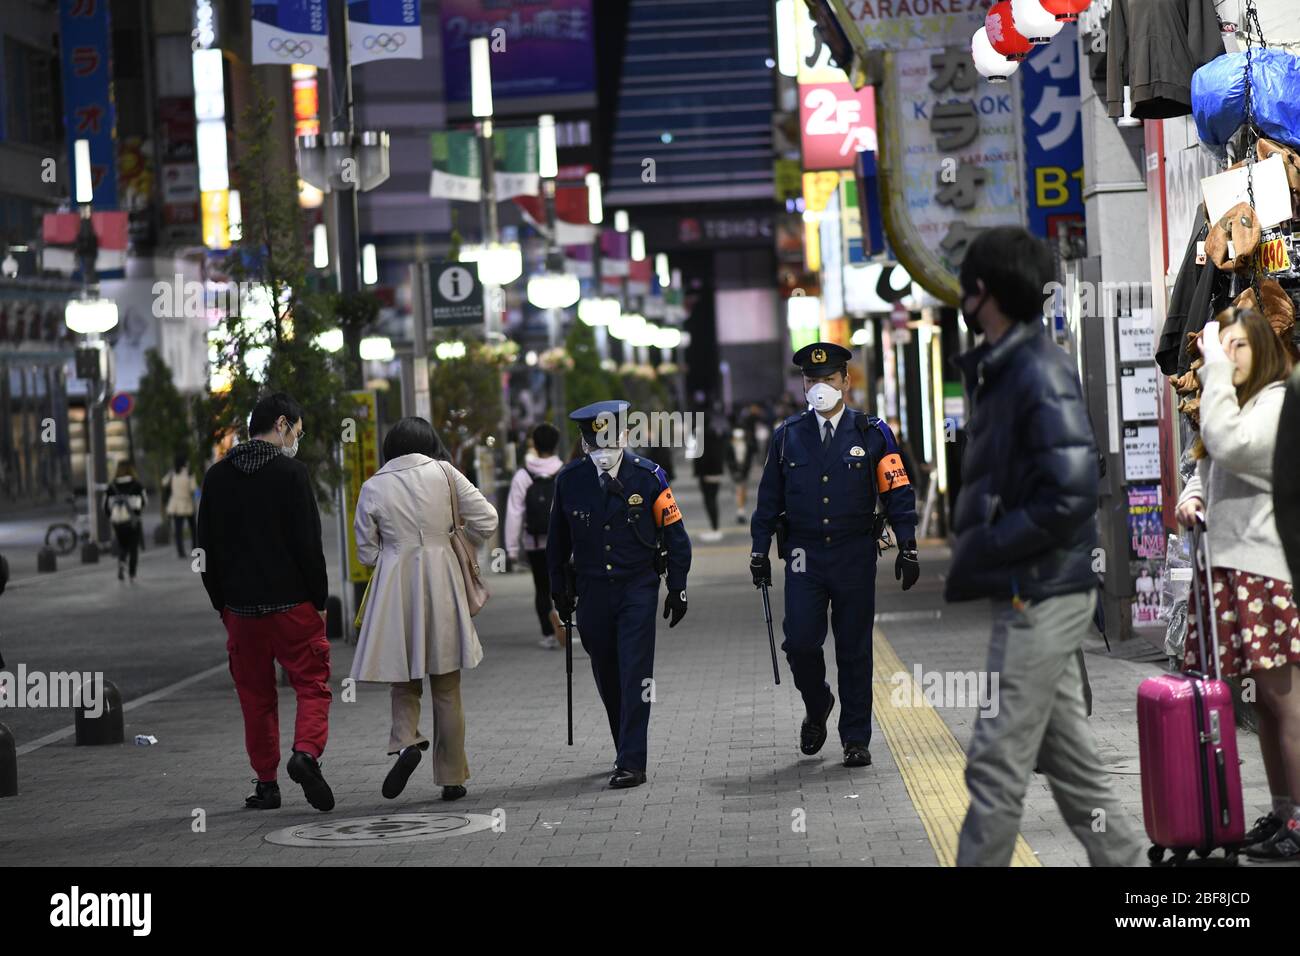 TOKIO, JAPÓN - 17 DE ABRIL: Oficiales de policía vigilan el distrito de entretenimiento Kabukicho en medio de la pandemia del coronavirus el 17 de abril de 2020 en Tokio. El gobierno de Japón ha solicitado que empresas como escuelas, instalaciones deportivas, bares y restaurantes cierren temporalmente o operen en horas reducidas durante el estado nacional de emergencia. El gobierno japonés decidió ampliar las zonas actuales en estado de emergencia a todo el país, ya que el brote de coronavirus Covid-19 continúa propagándose por todo el país. Crédito: AFLO Co. Ltd./Alamy Live News Foto de stock